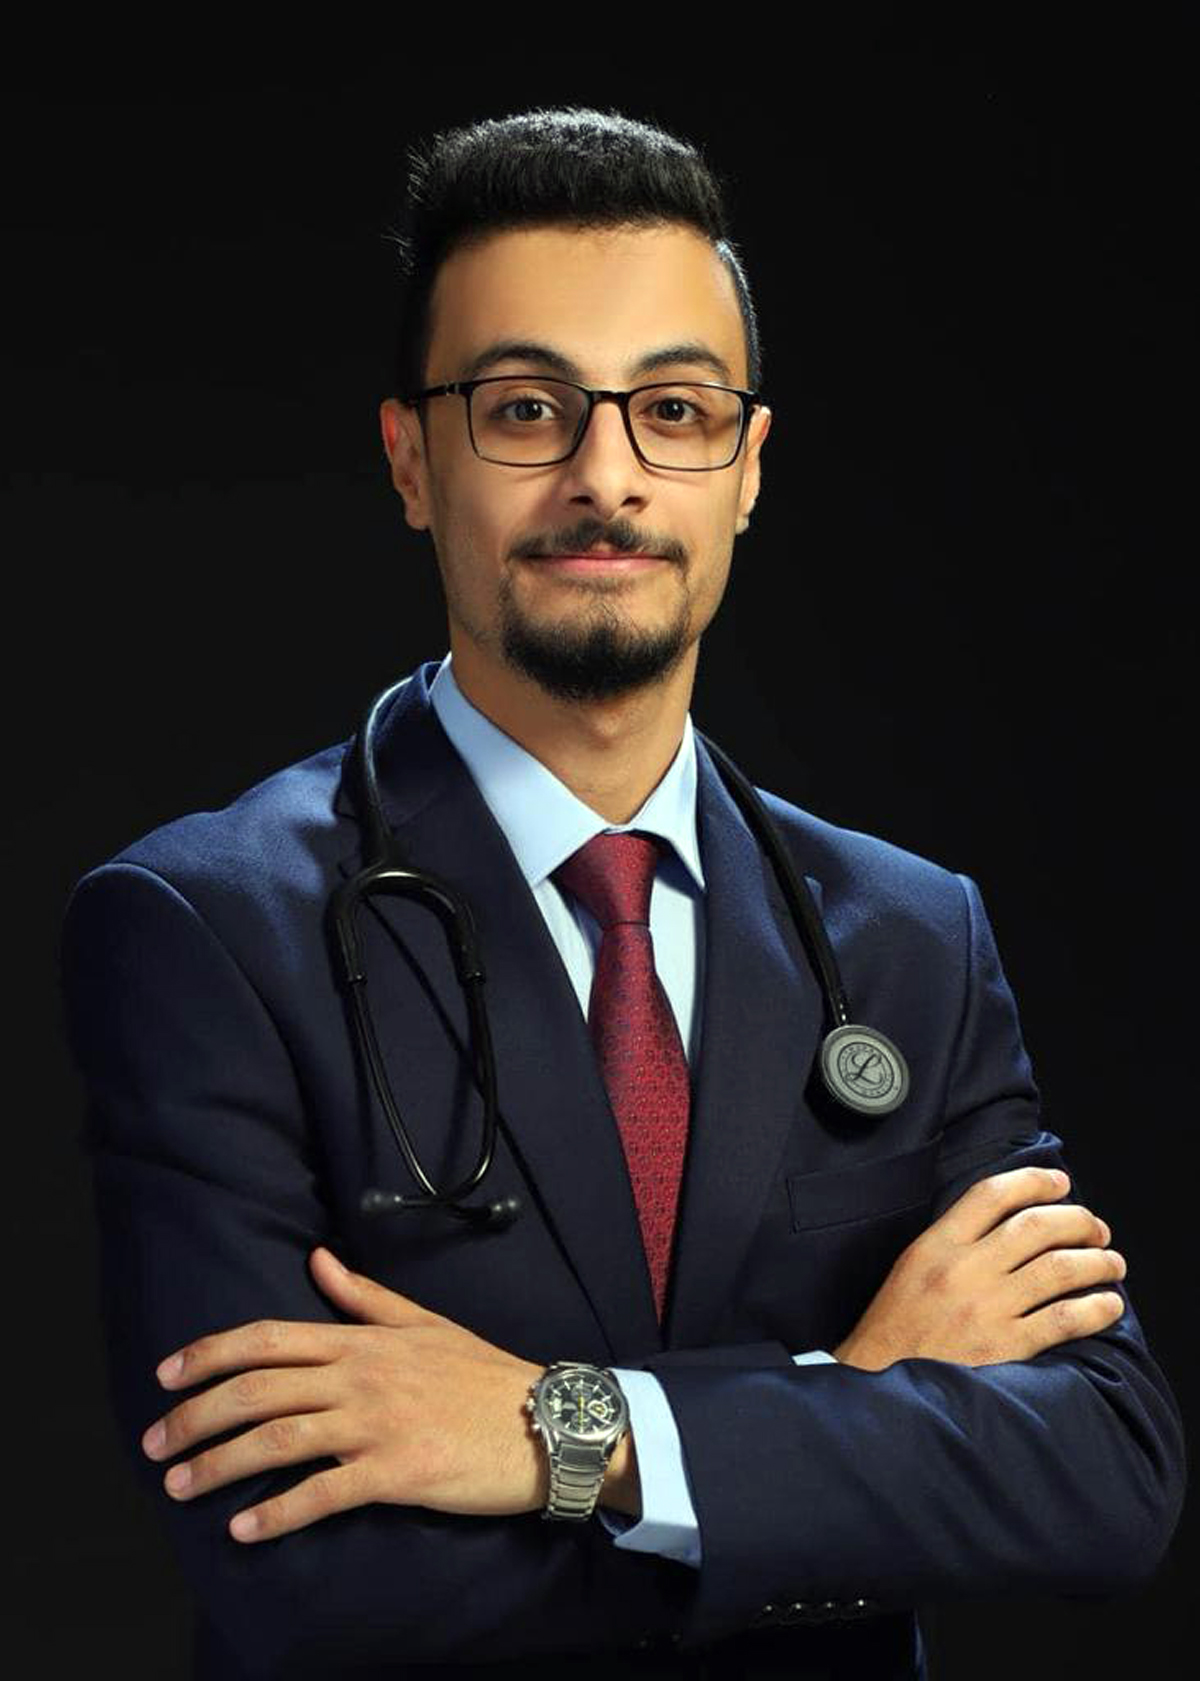 الطبيب الأردني نايف الغنميين يحصل على أعلى الدرجات بامتحان المزاولة الأميركي